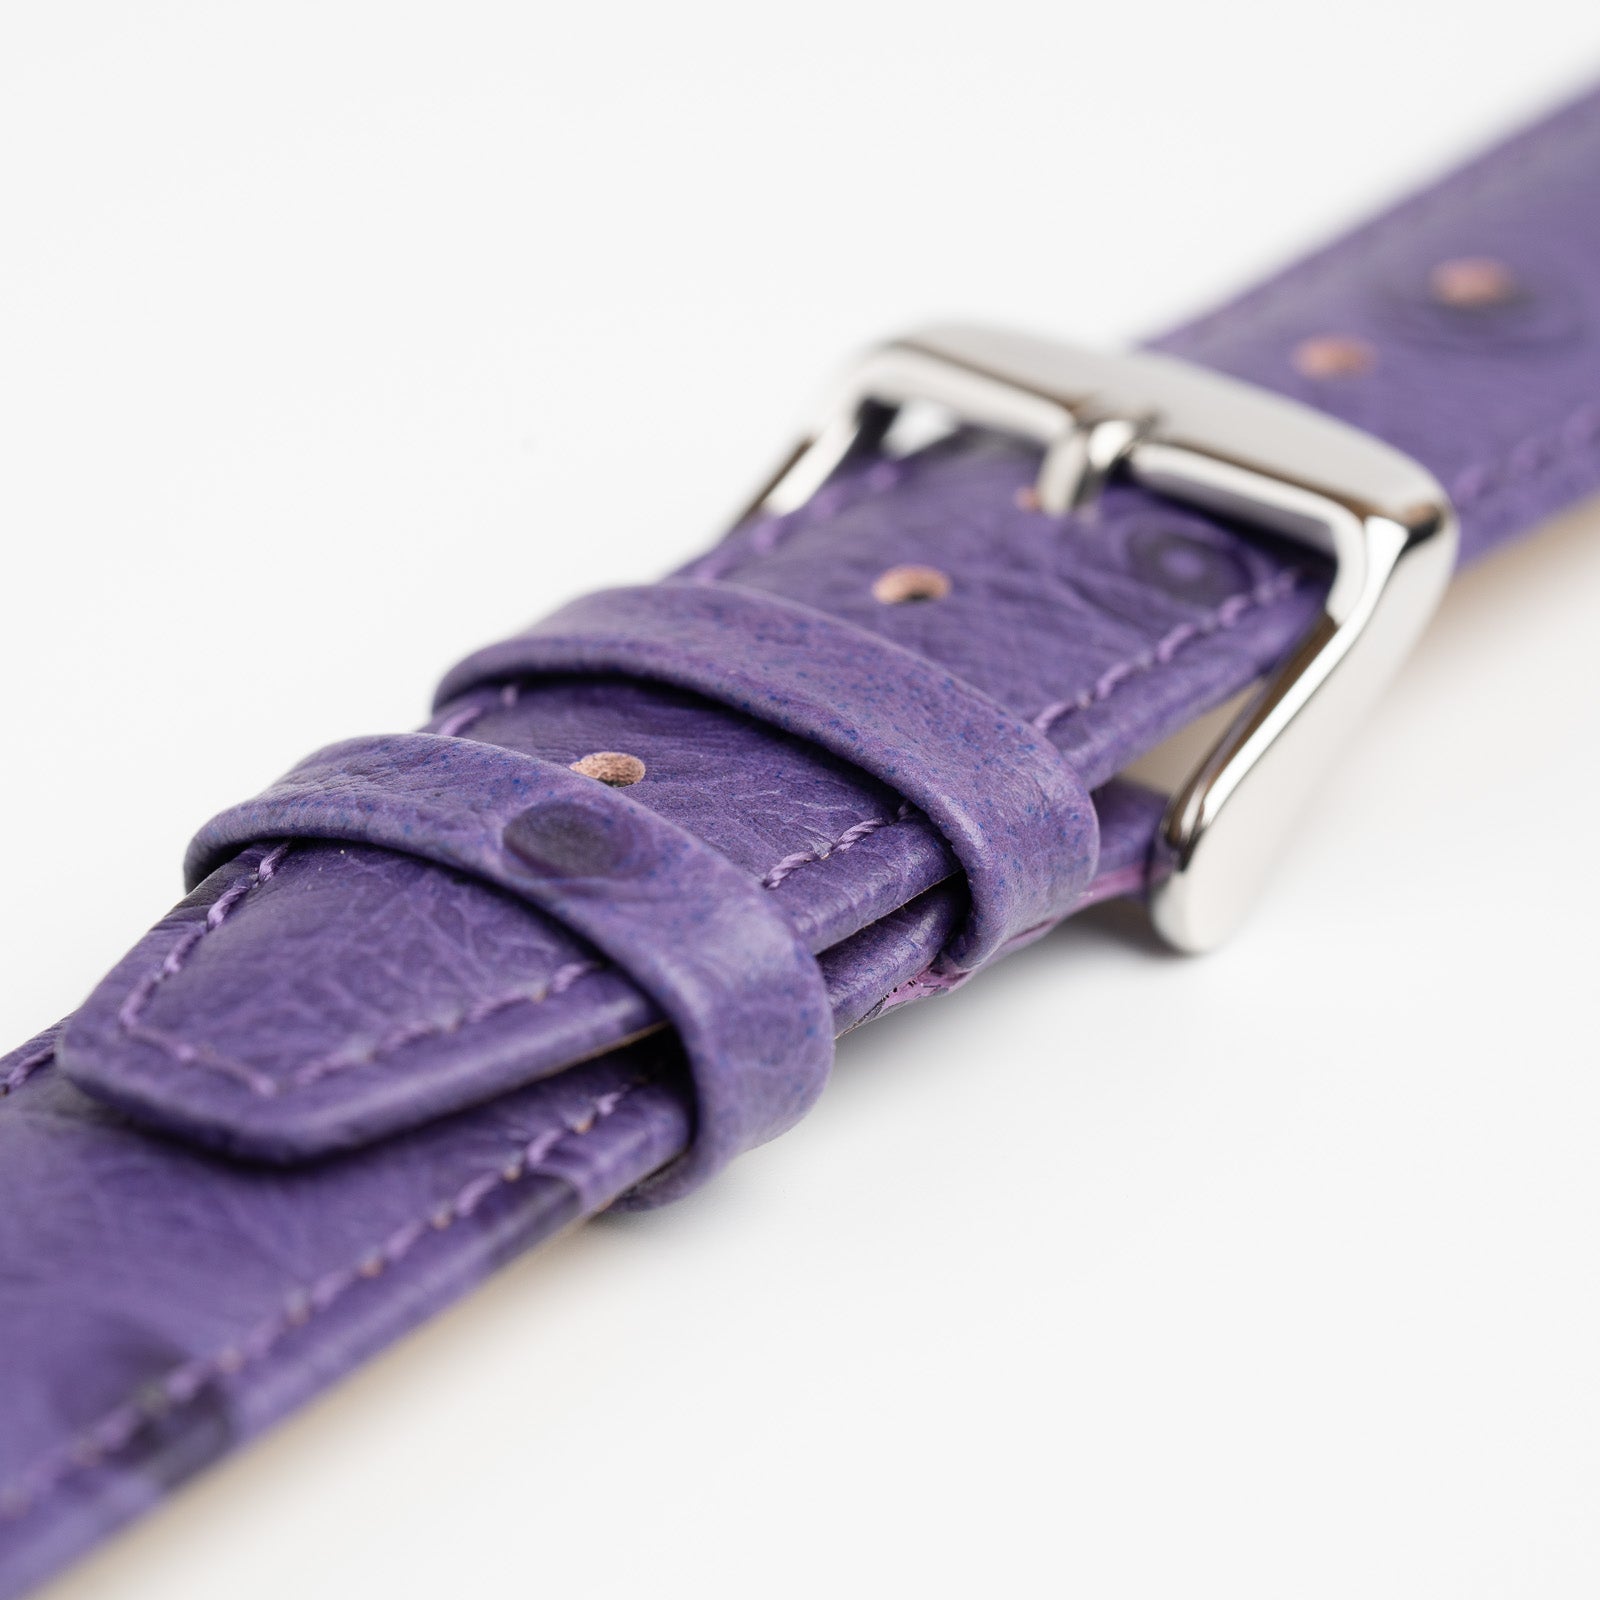 Sandbanks Ostrich Purple Watch Strap